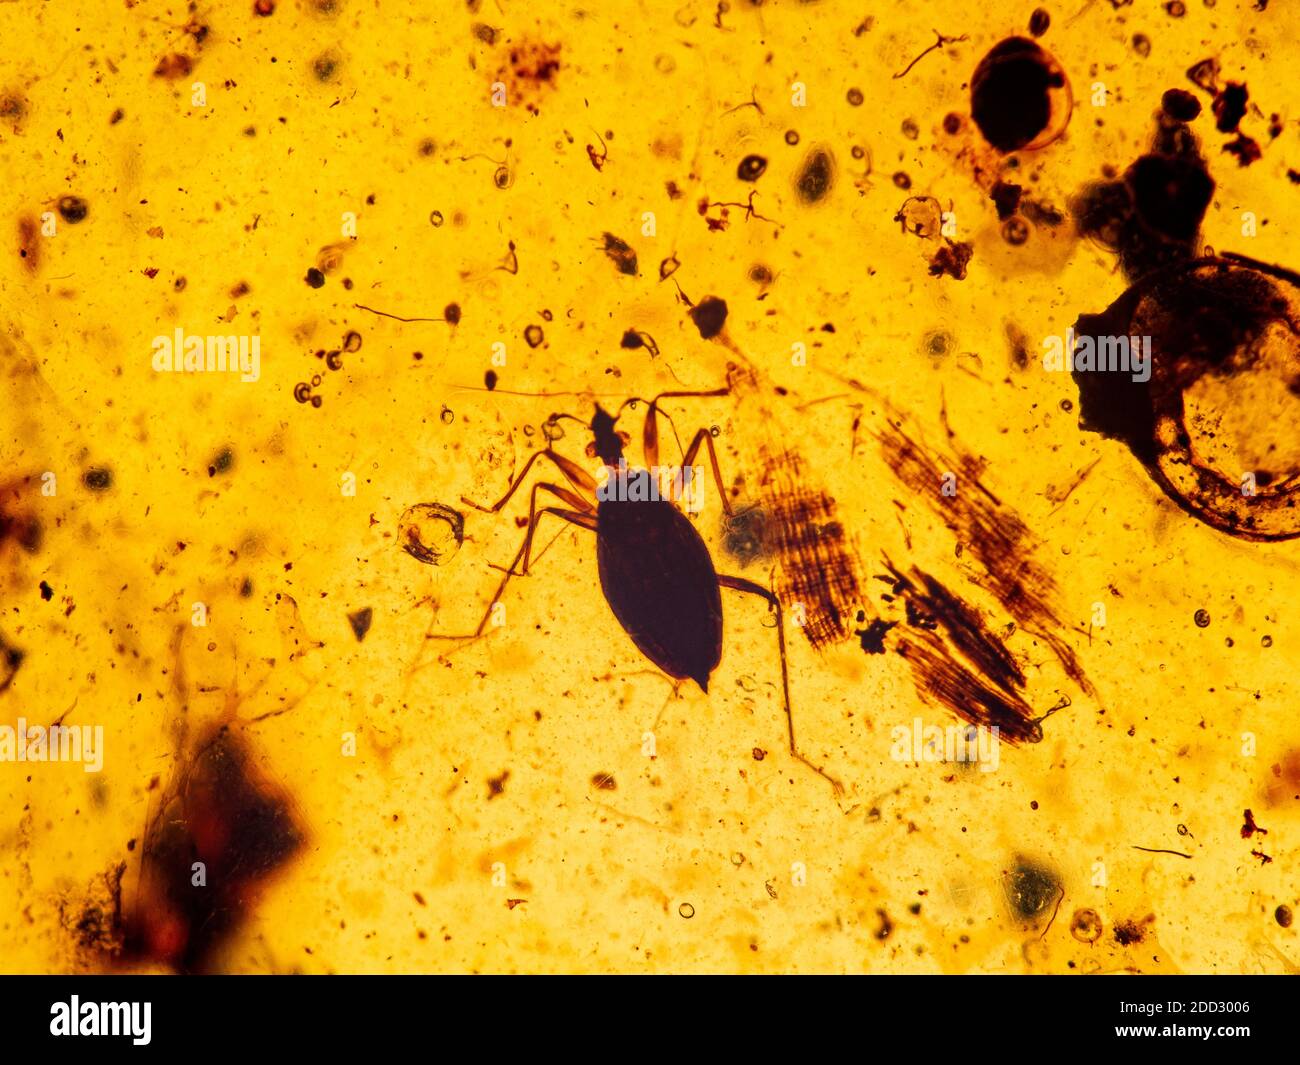 Un vero bug (Heteroptera) conservato all'interno di un pezzo di antico ambra birmano, noto anche come Burmite, è resina di alberi fossilizzati circa 99 milioni di y Foto Stock